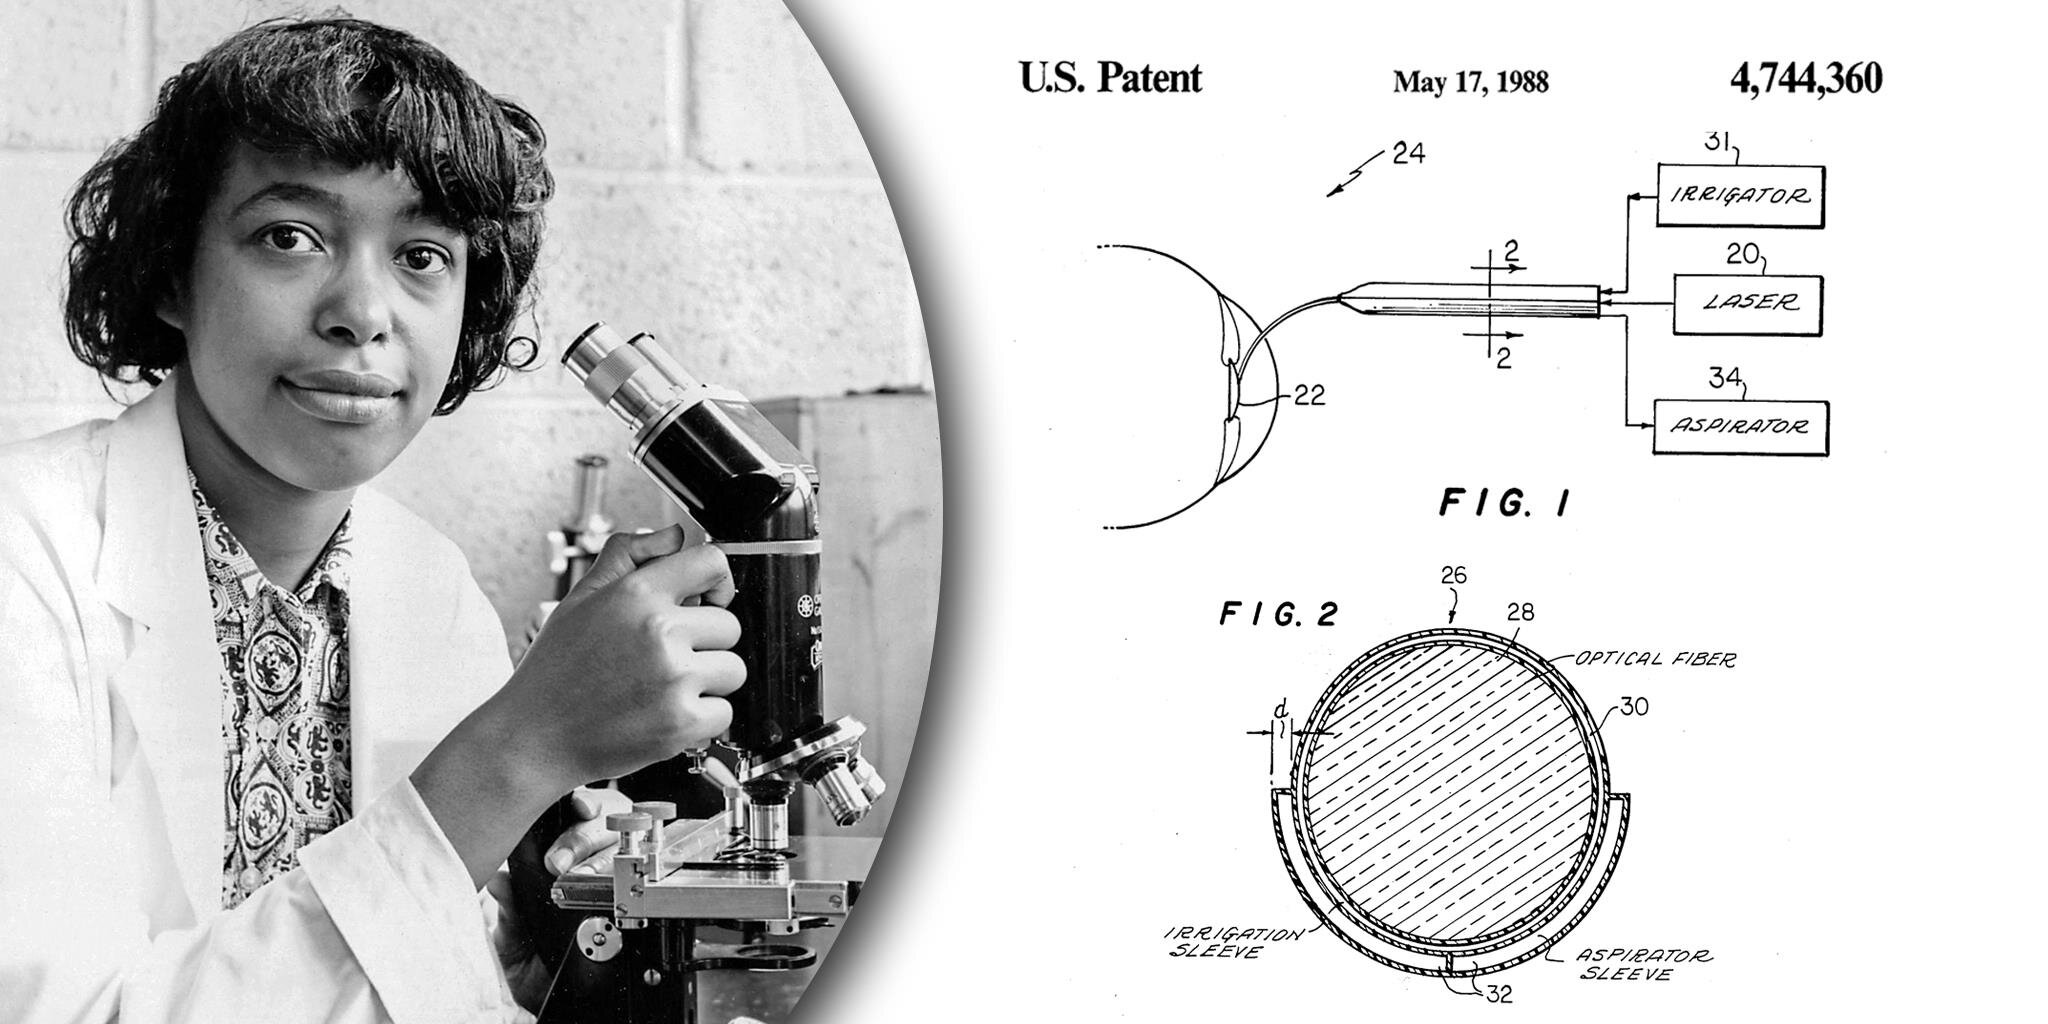 Năm 1981, Patricia Bath bắt đầu thực hiện phát minh nổi tiếng nhất của mình: Máy thăm dò Laserphaco. Khai thác công nghệ laser, thiết bị này được hoàn thành vào năm 1986, tạo ra phương pháp điều trị đục thủy tinh thể ít đau đớn hơn và chính xác hơn. Bà được cấp bằng sáng chế cho máy Laserphaco Probe vào năm 1988, trở thành nữ bác sĩ người Mỹ gốc Phi đầu tiên nhận được bằng sáng chế hạng mục về y tế. (Ảnh: USPTO)